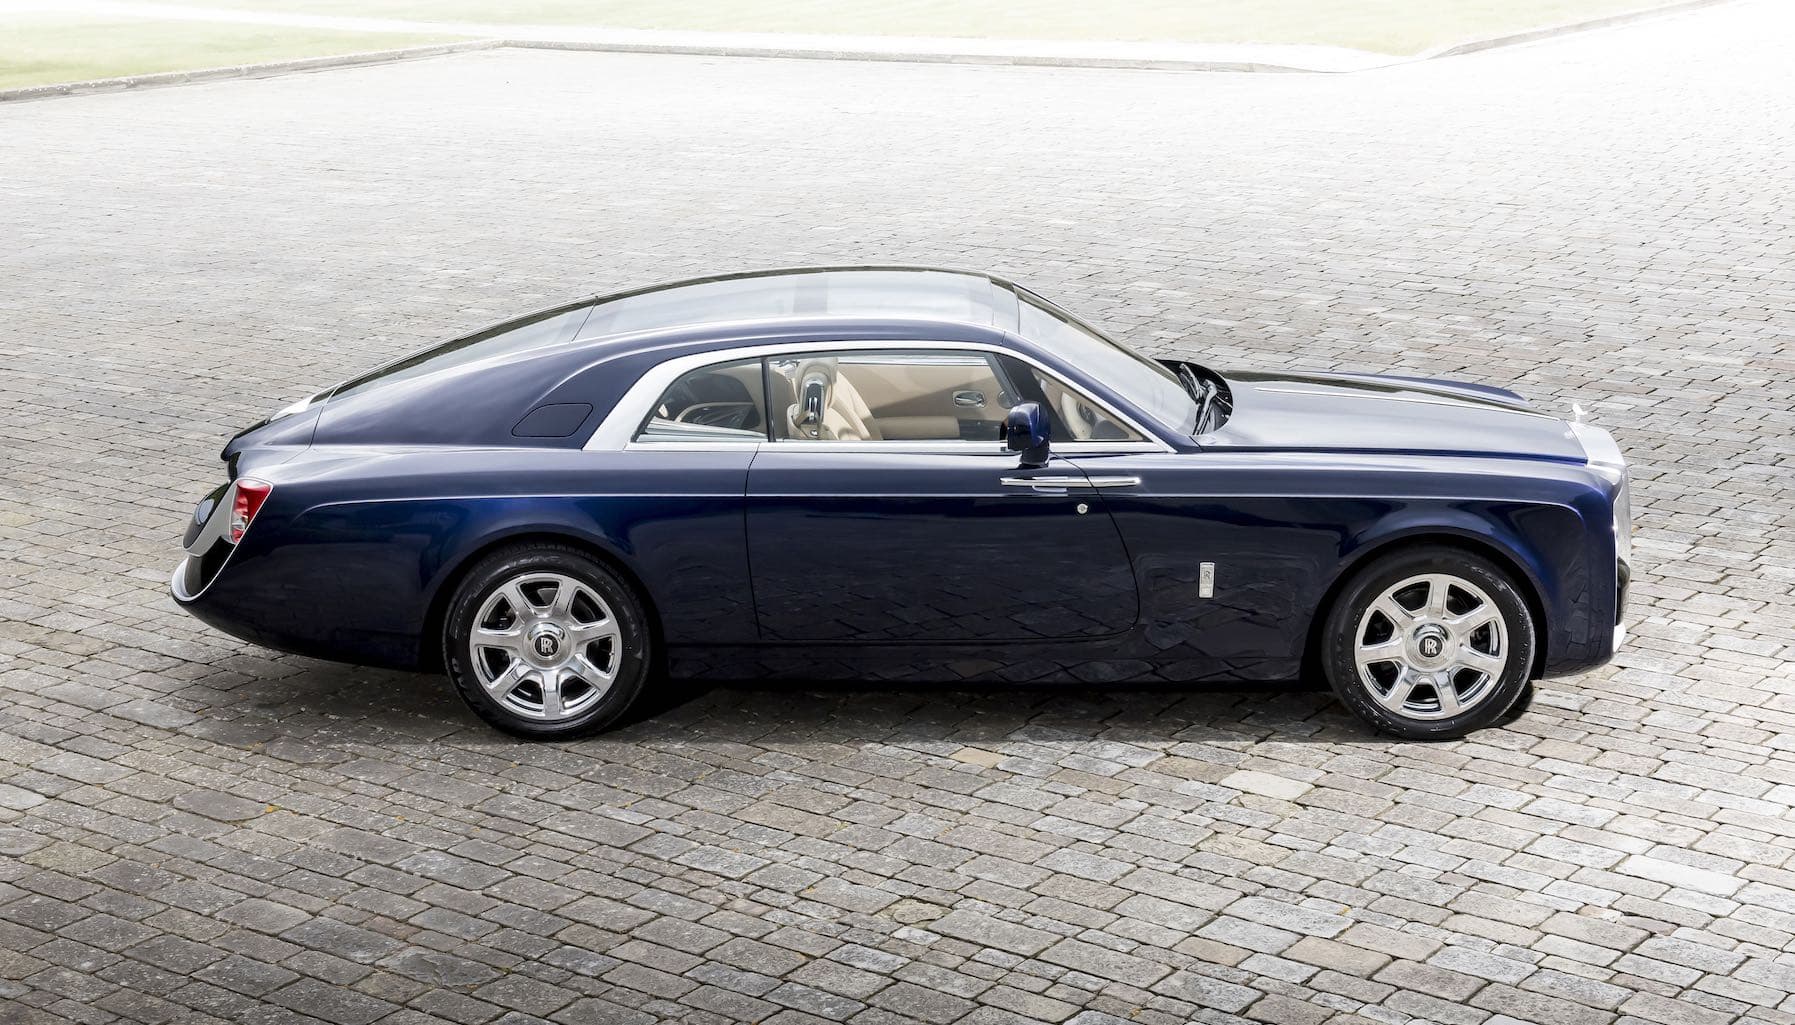 15 điều thú vị có thể bạn chưa biết về thương hiệu xế siêu sang Rolls-Royce (kỳ 2)